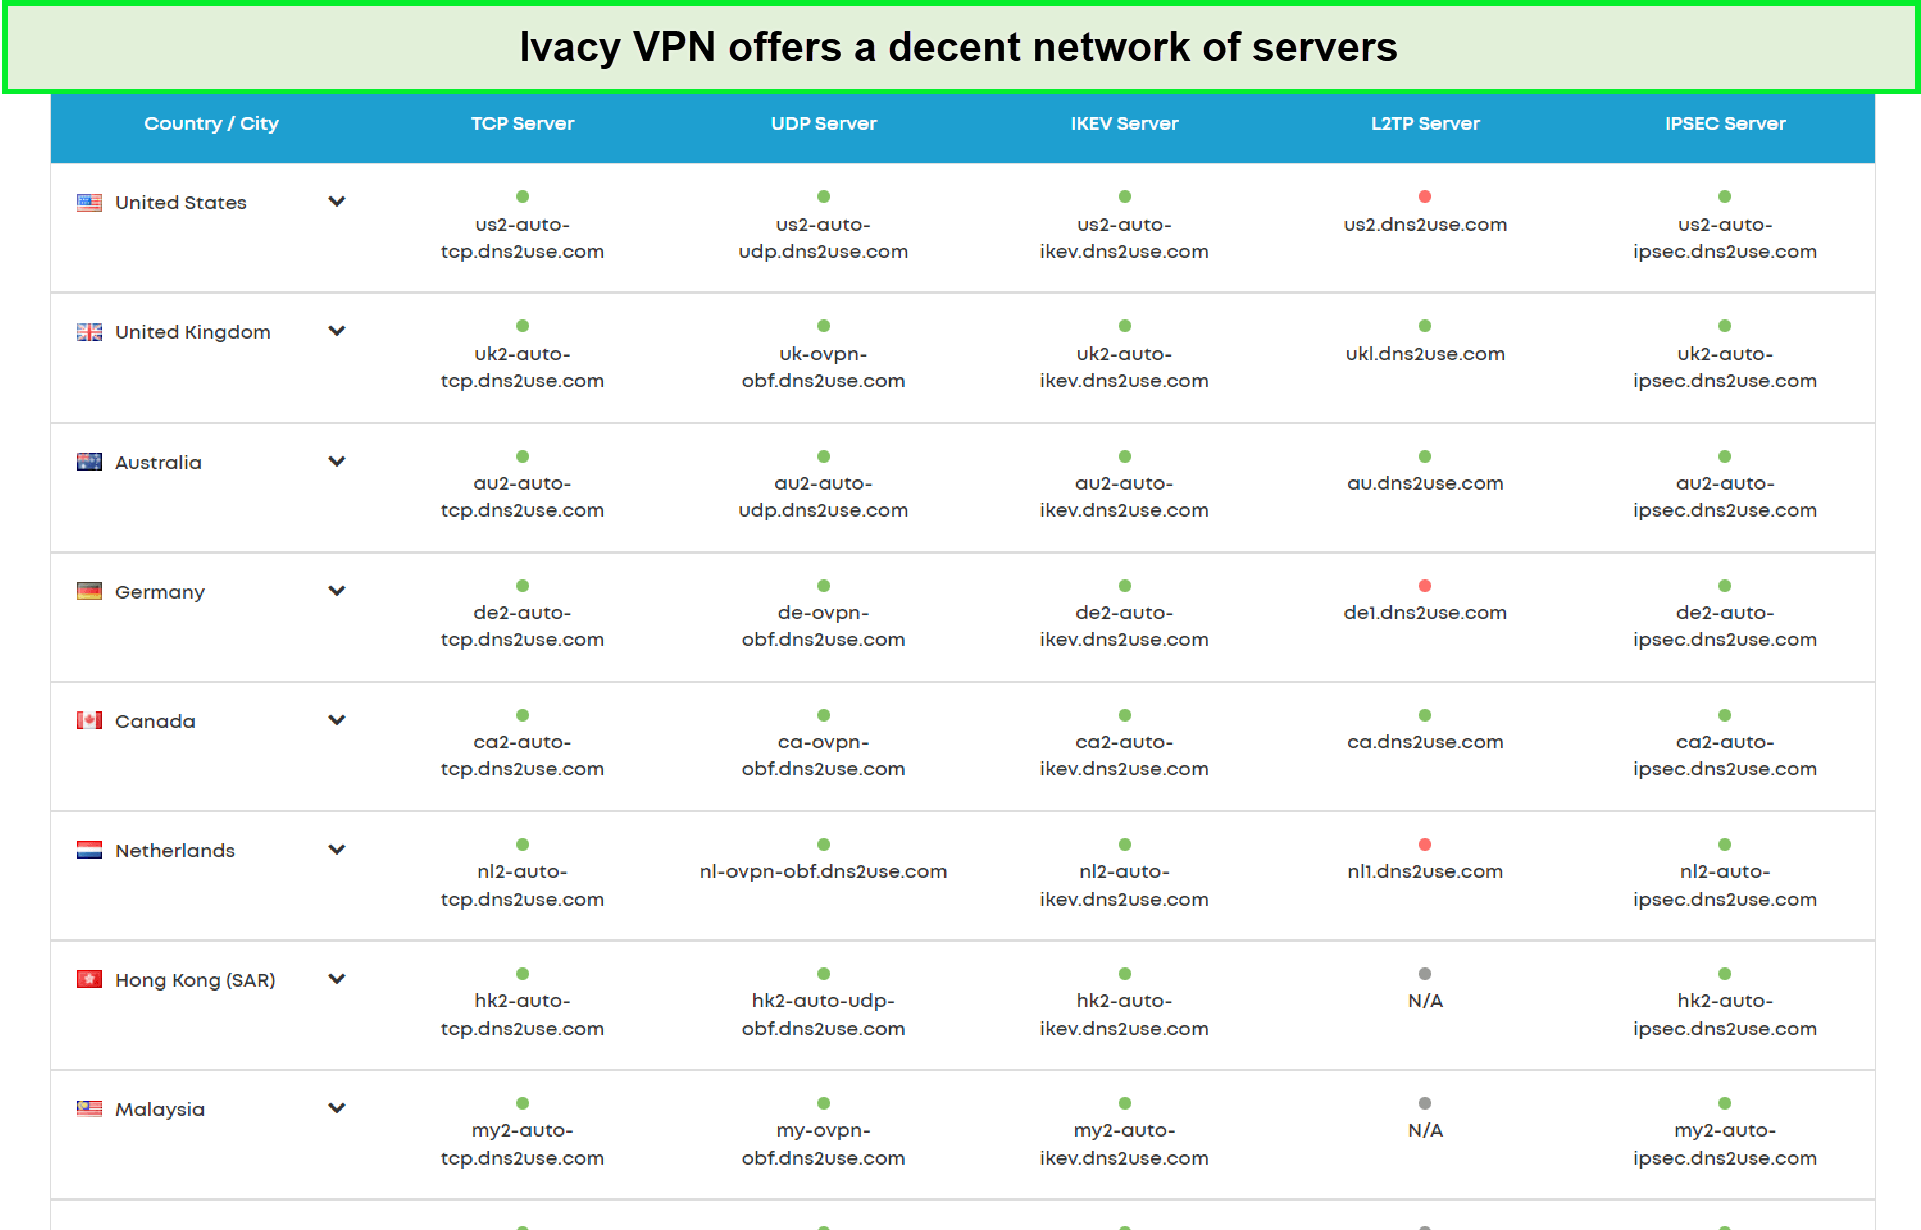 ivacy-server-network-in-UAE